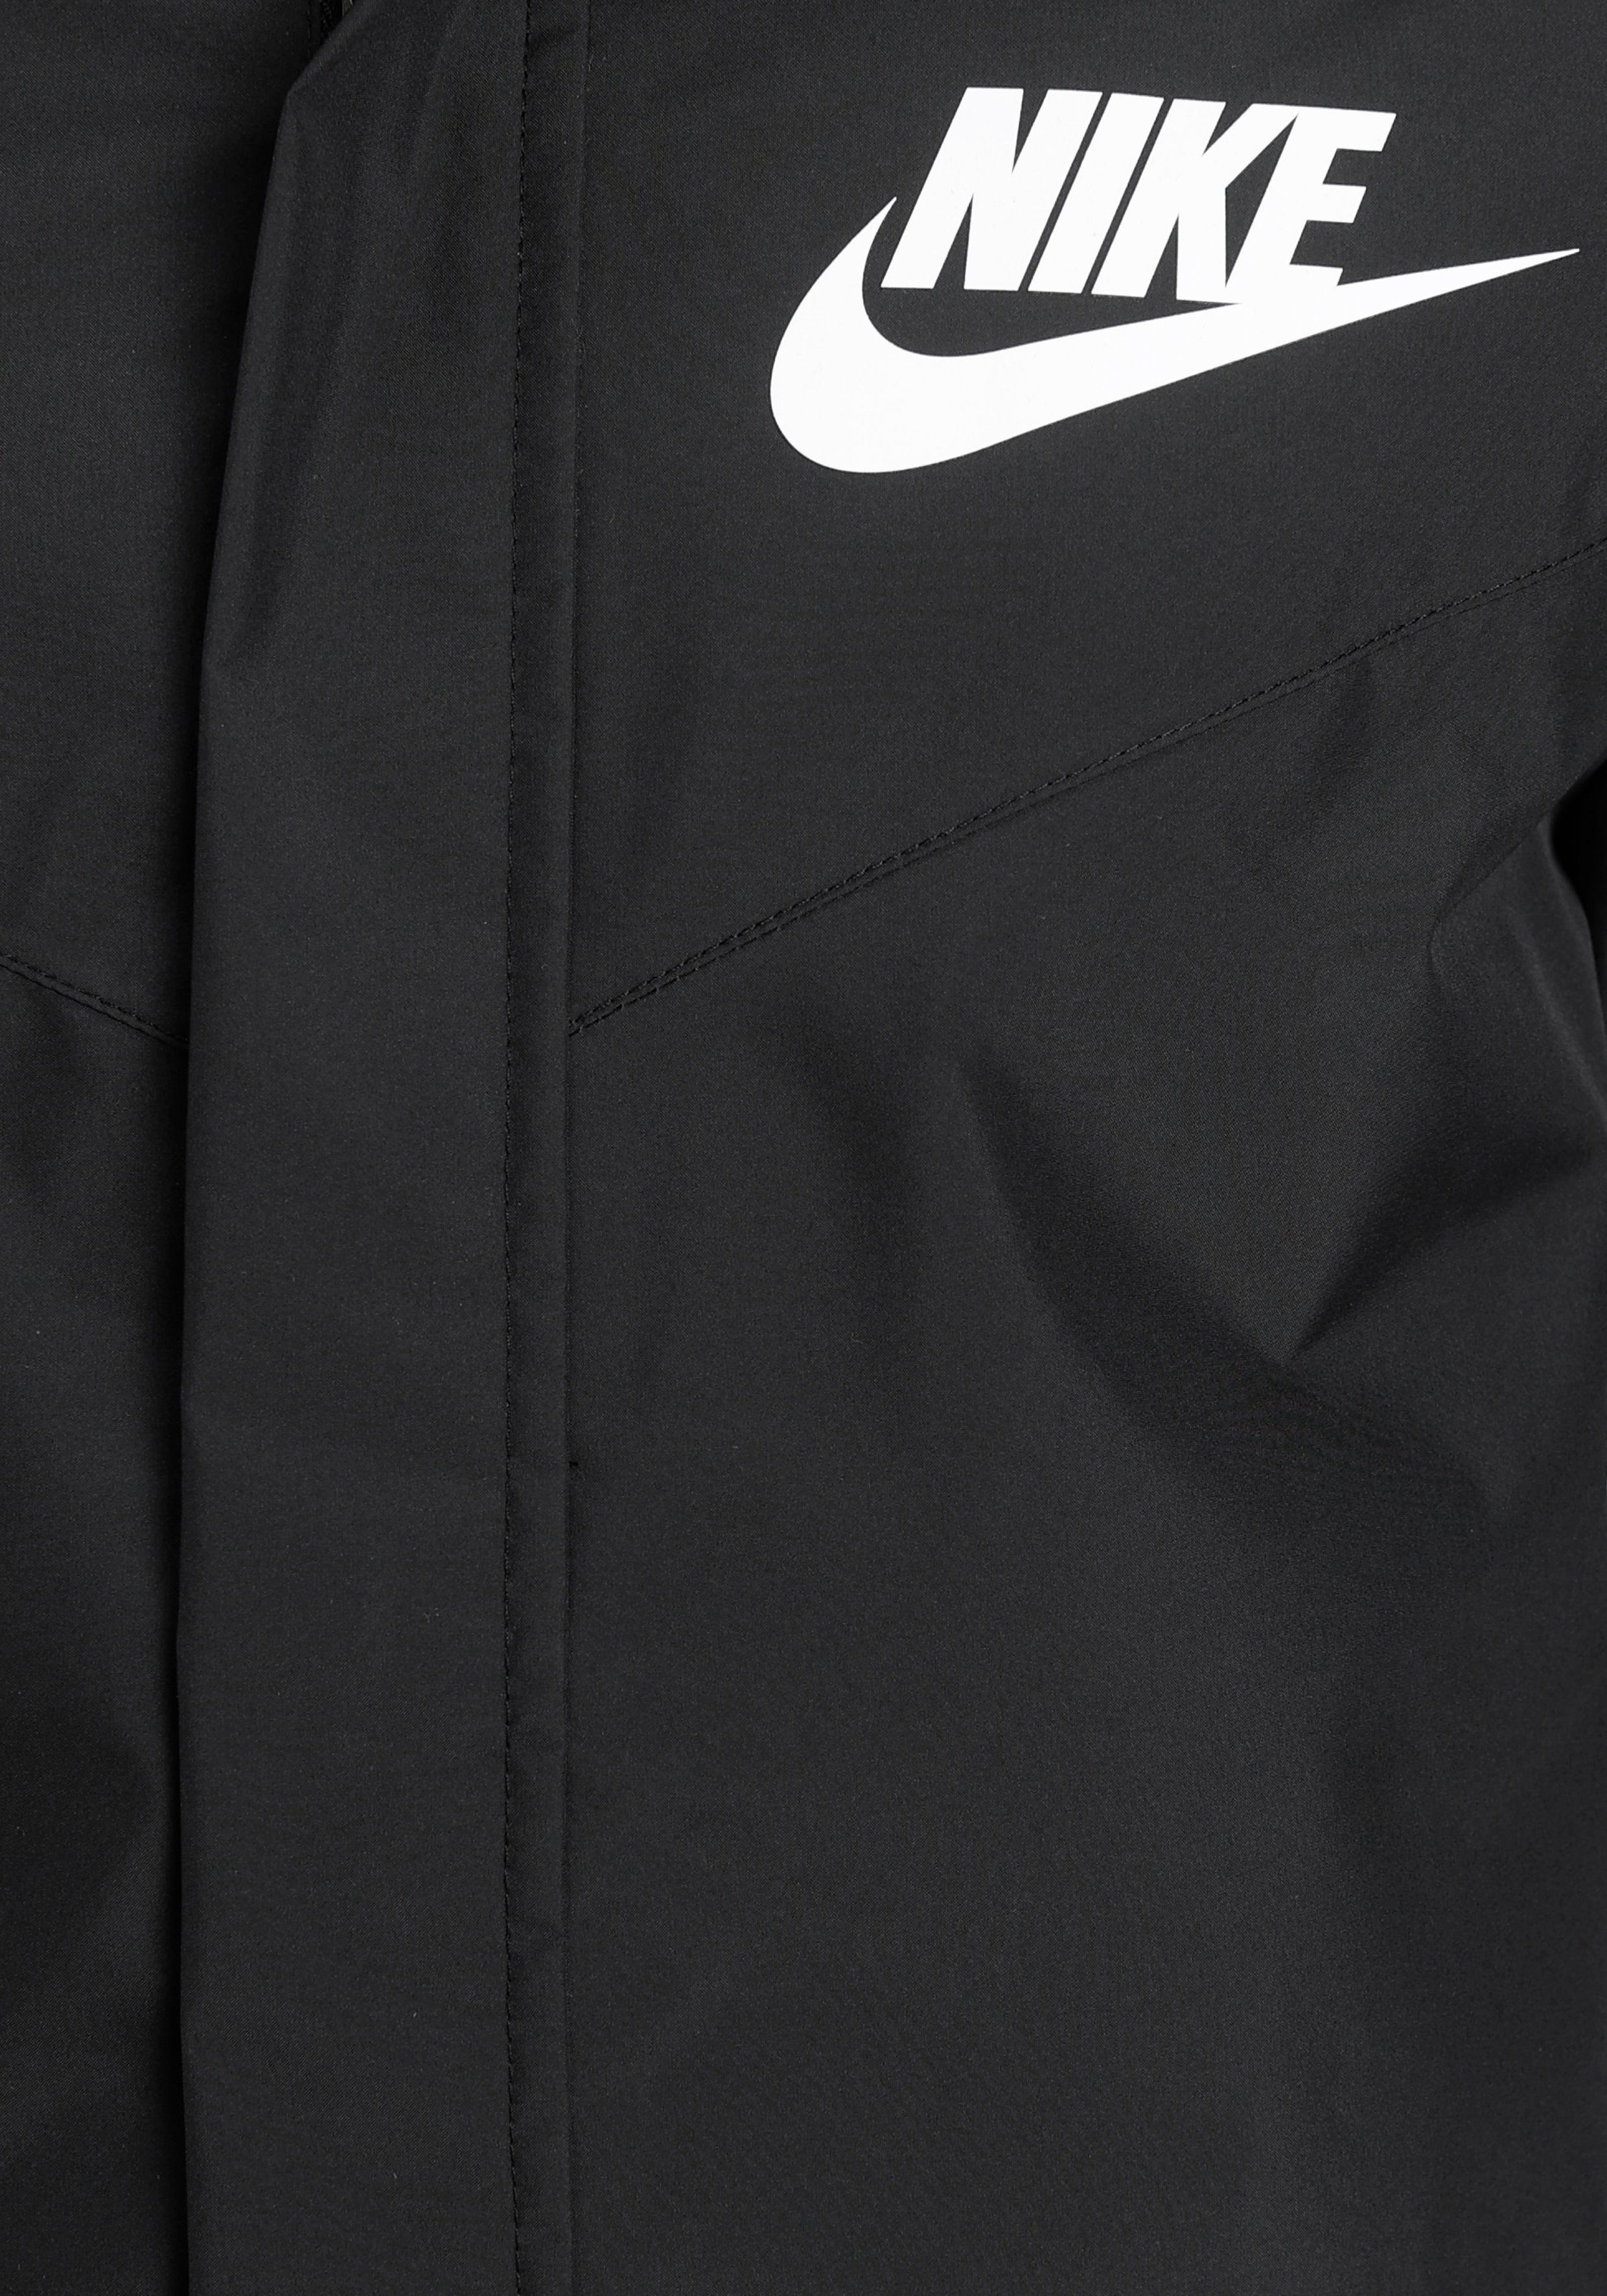 Windrunner Jacket BLACK/BLACK/WHITE Windbreaker Big Storm-FIT (Boys) Sportswear Kids' Nike